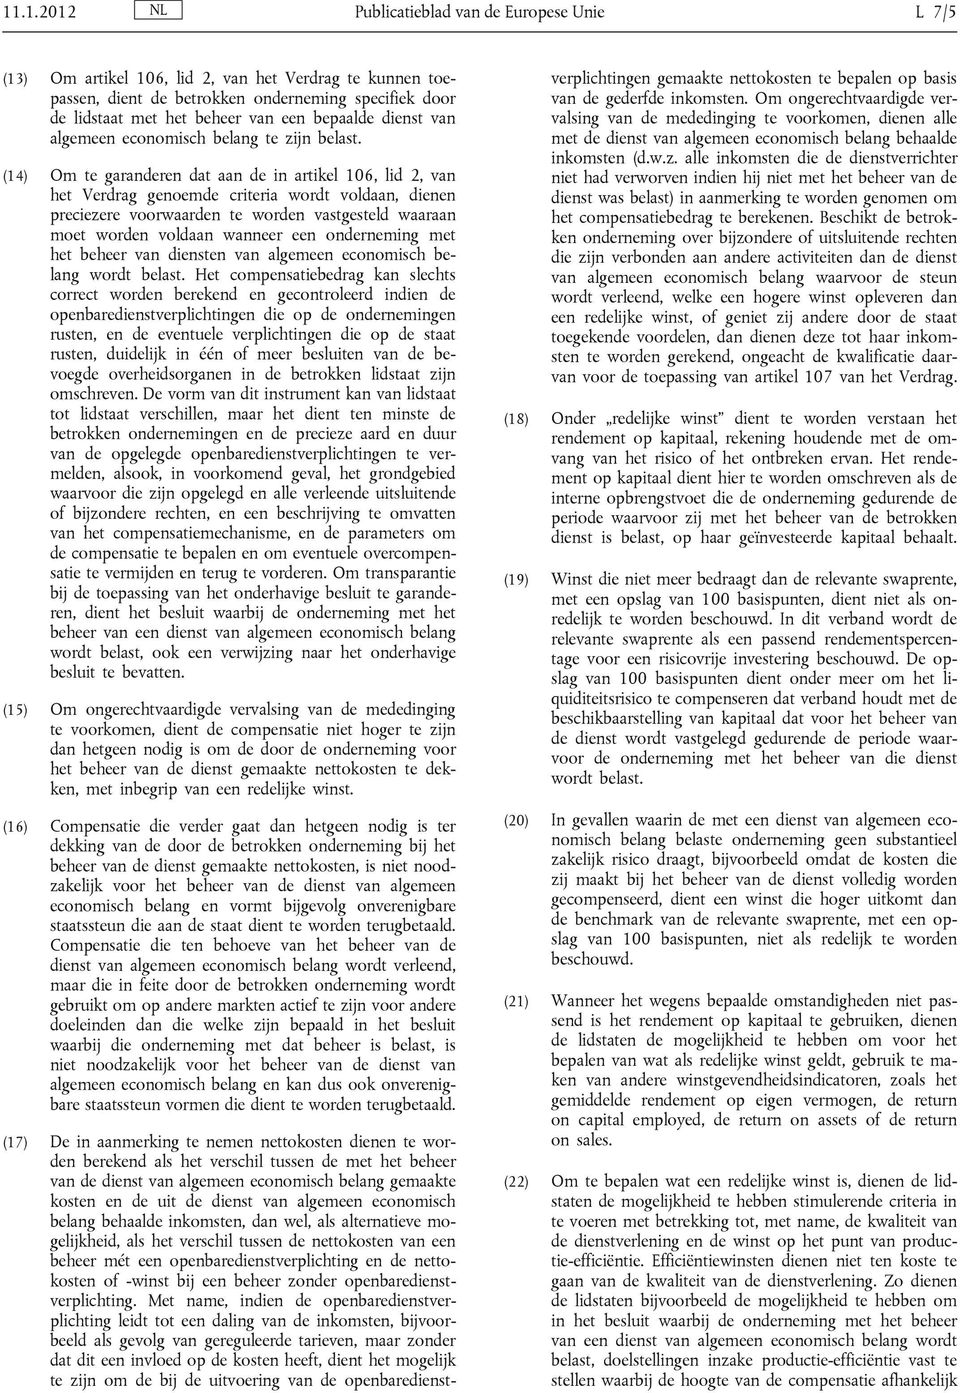 (14) Om te garanderen dat aan de in artikel 106, lid 2, van het Verdrag genoemde criteria wordt voldaan, dienen preciezere voorwaarden te worden vastgesteld waaraan moet worden voldaan wanneer een